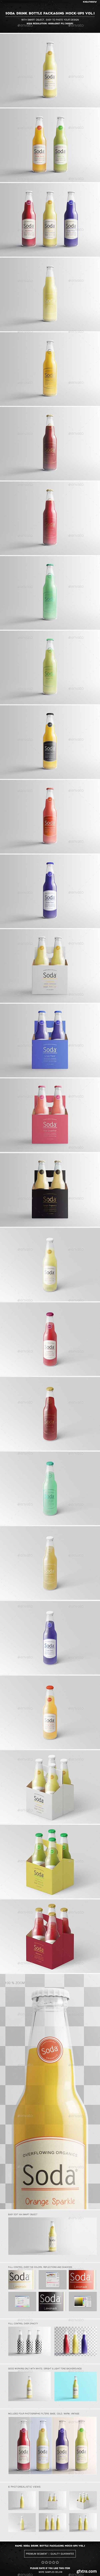 Graphicriver - Soda Drink Bottle Packaging Mock-Ups Vol.1 20258084